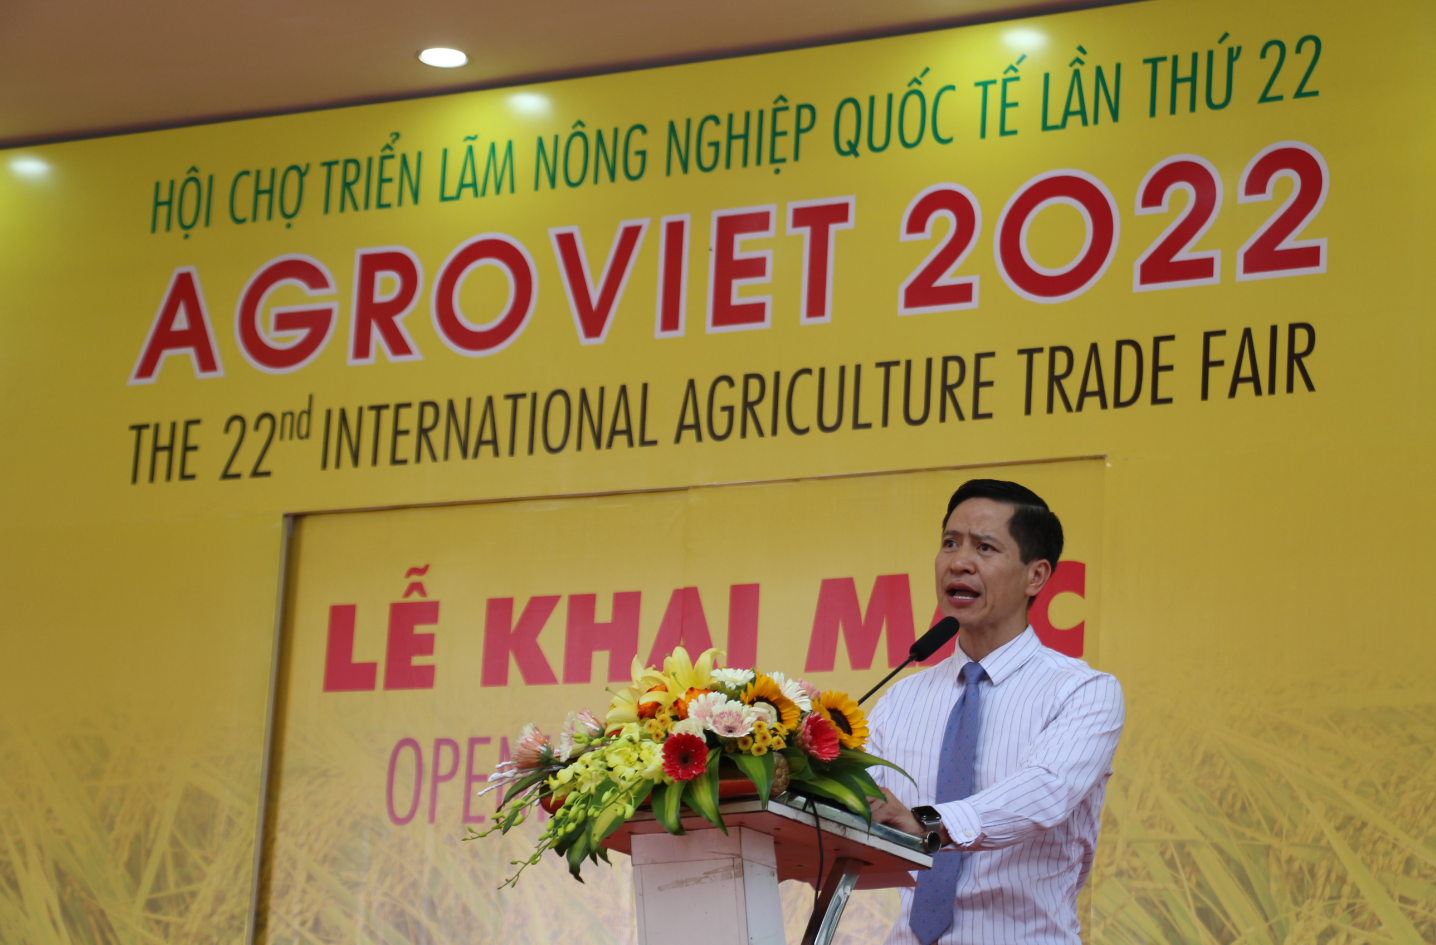 Khai mạc hội chợ triển lãm Nông nghiệp Quốc tế lần thứ 22 - AgroViet 2022